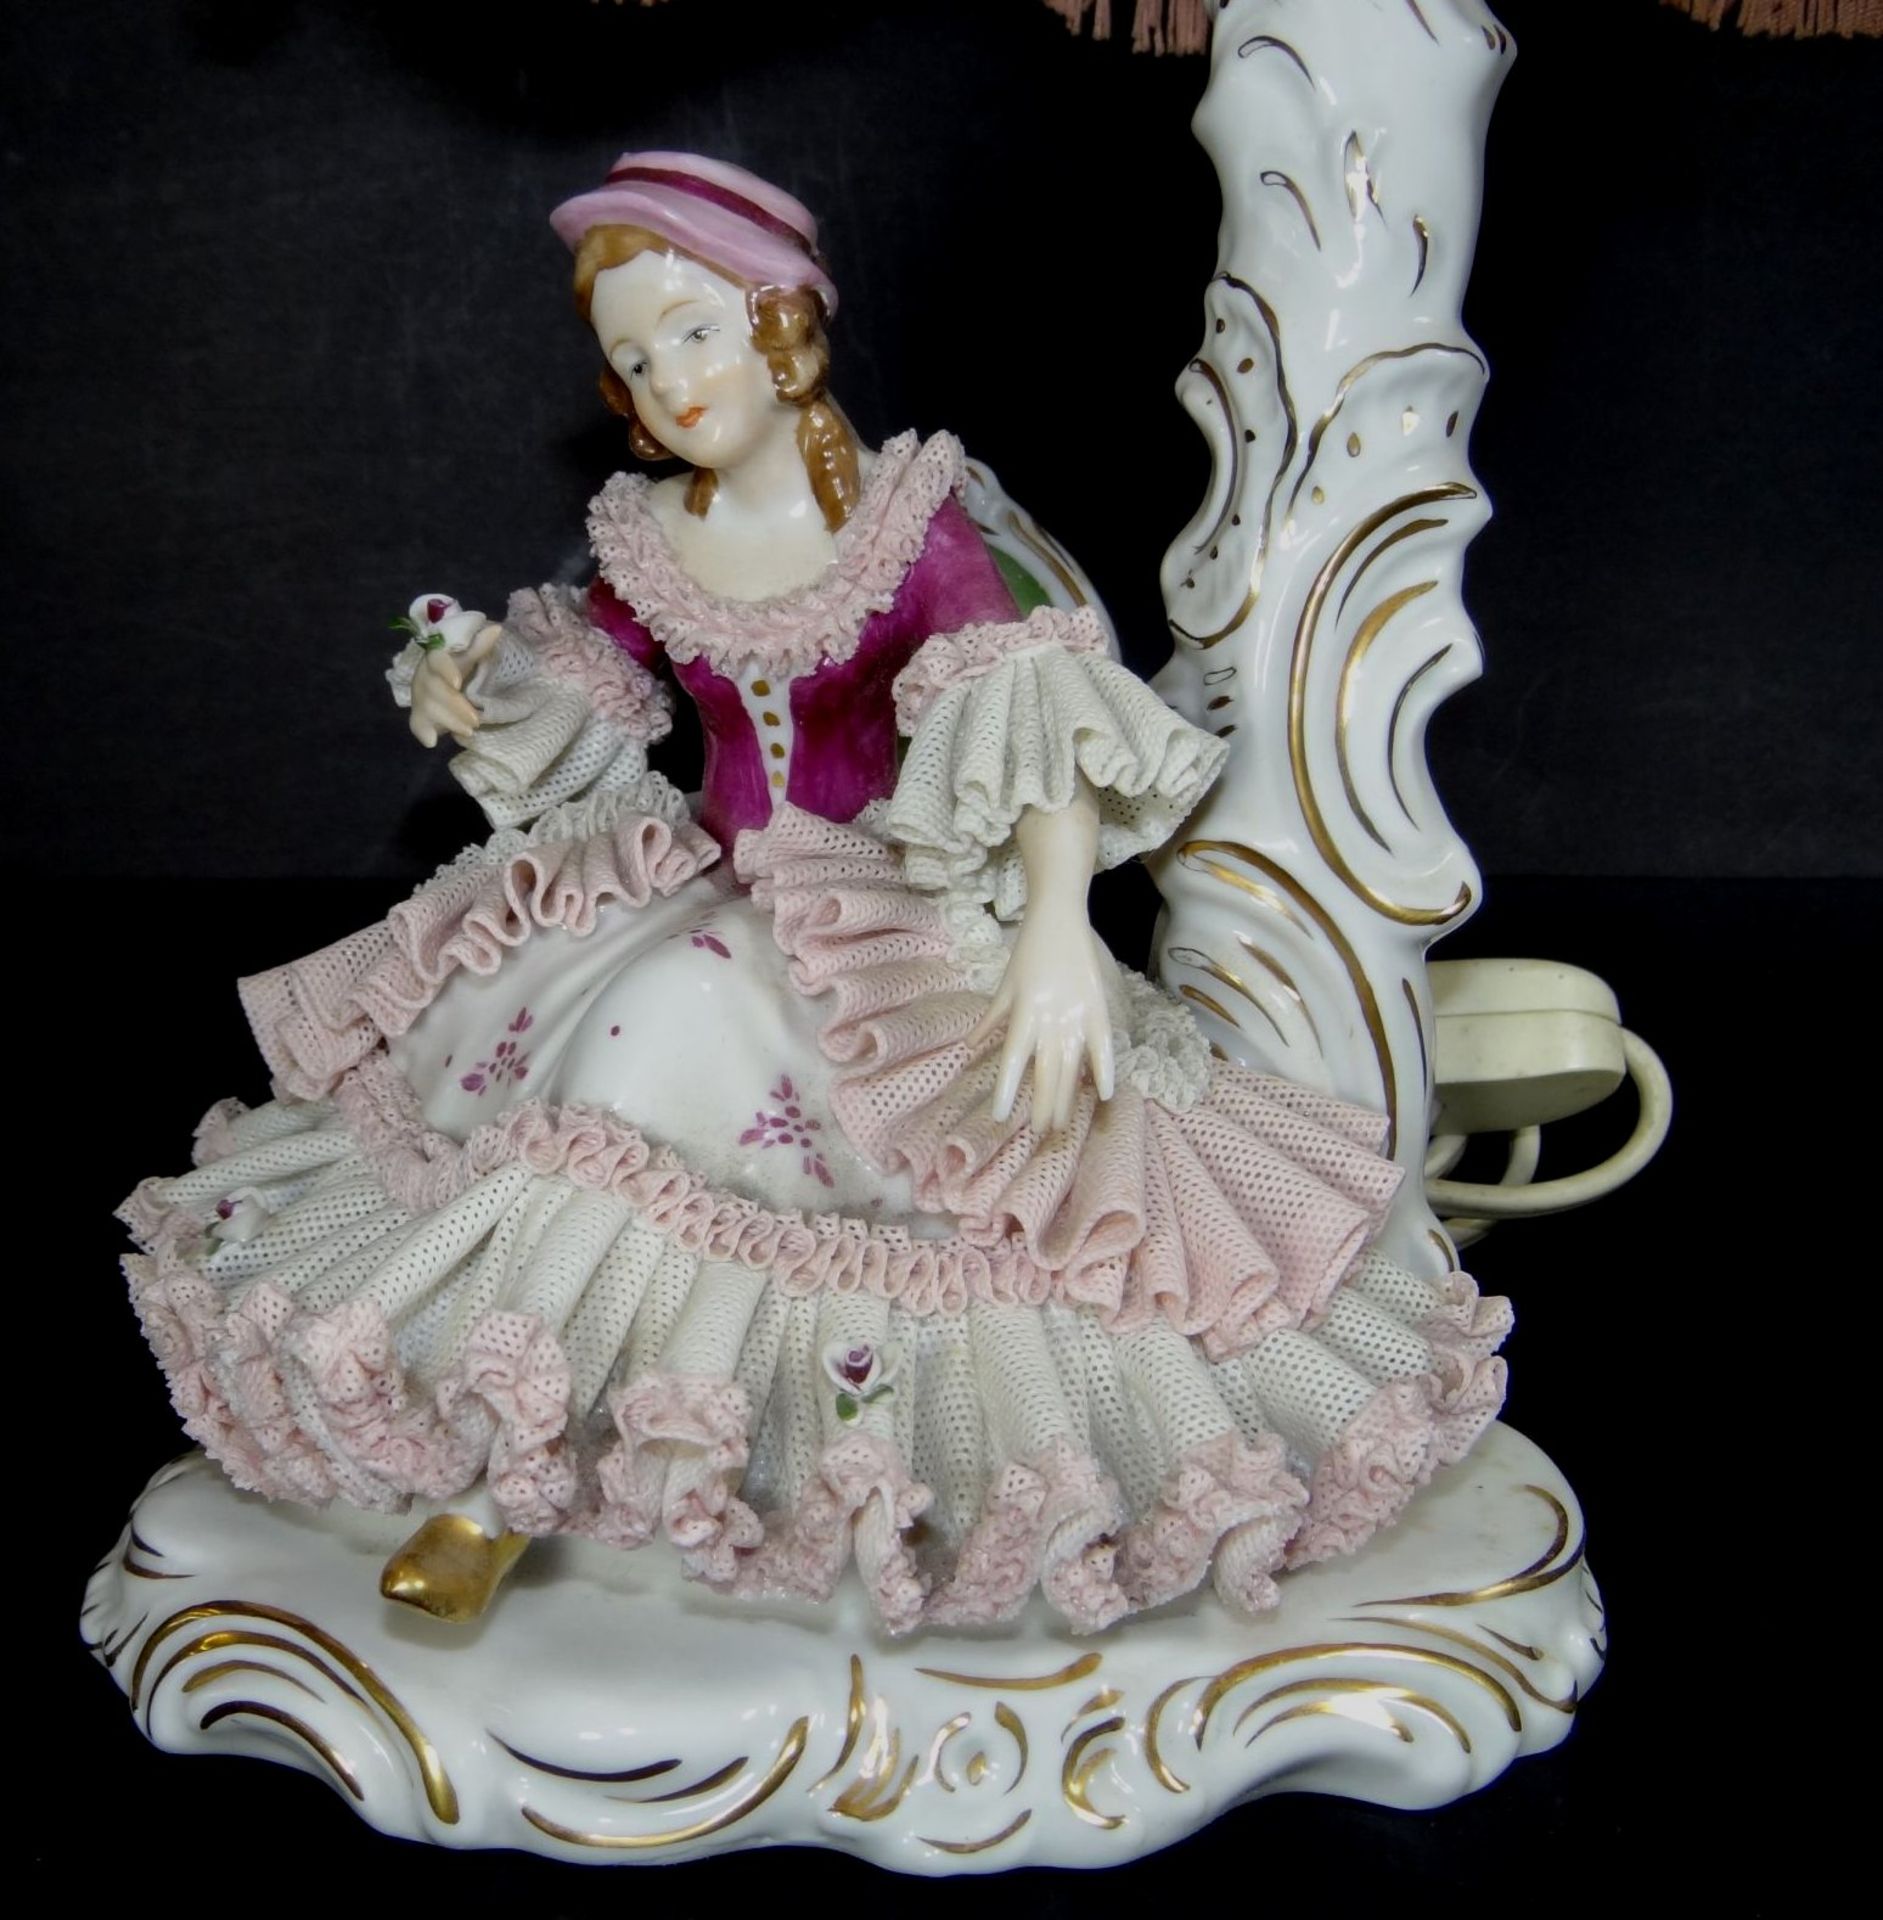 Tischlampe "Dresden" sitz. Mädchen mit Blumenstrauss, Kleid minim. rückseitig beschädigt, H-42 cm, - Bild 2 aus 8